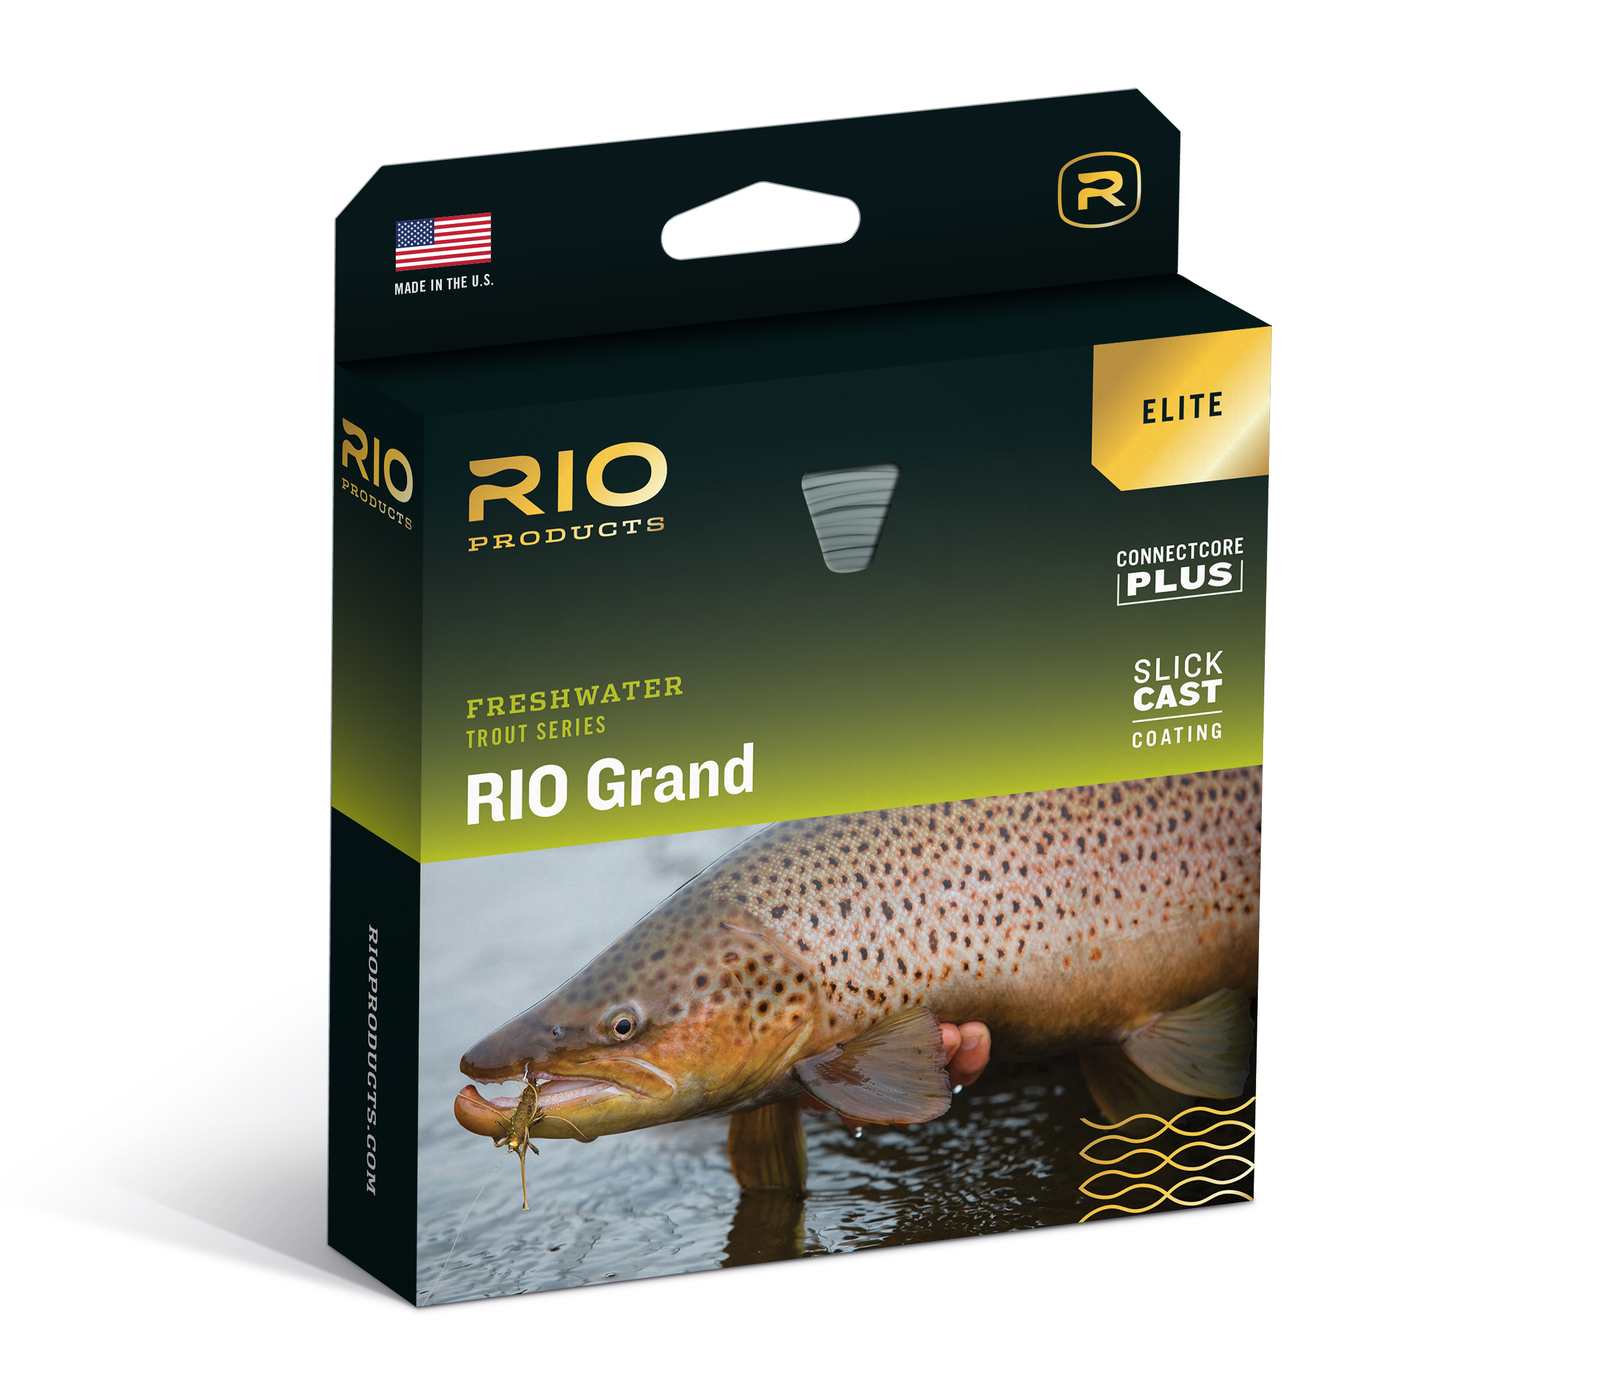 Rio Freshwater Trout Series Elite Rio Grand